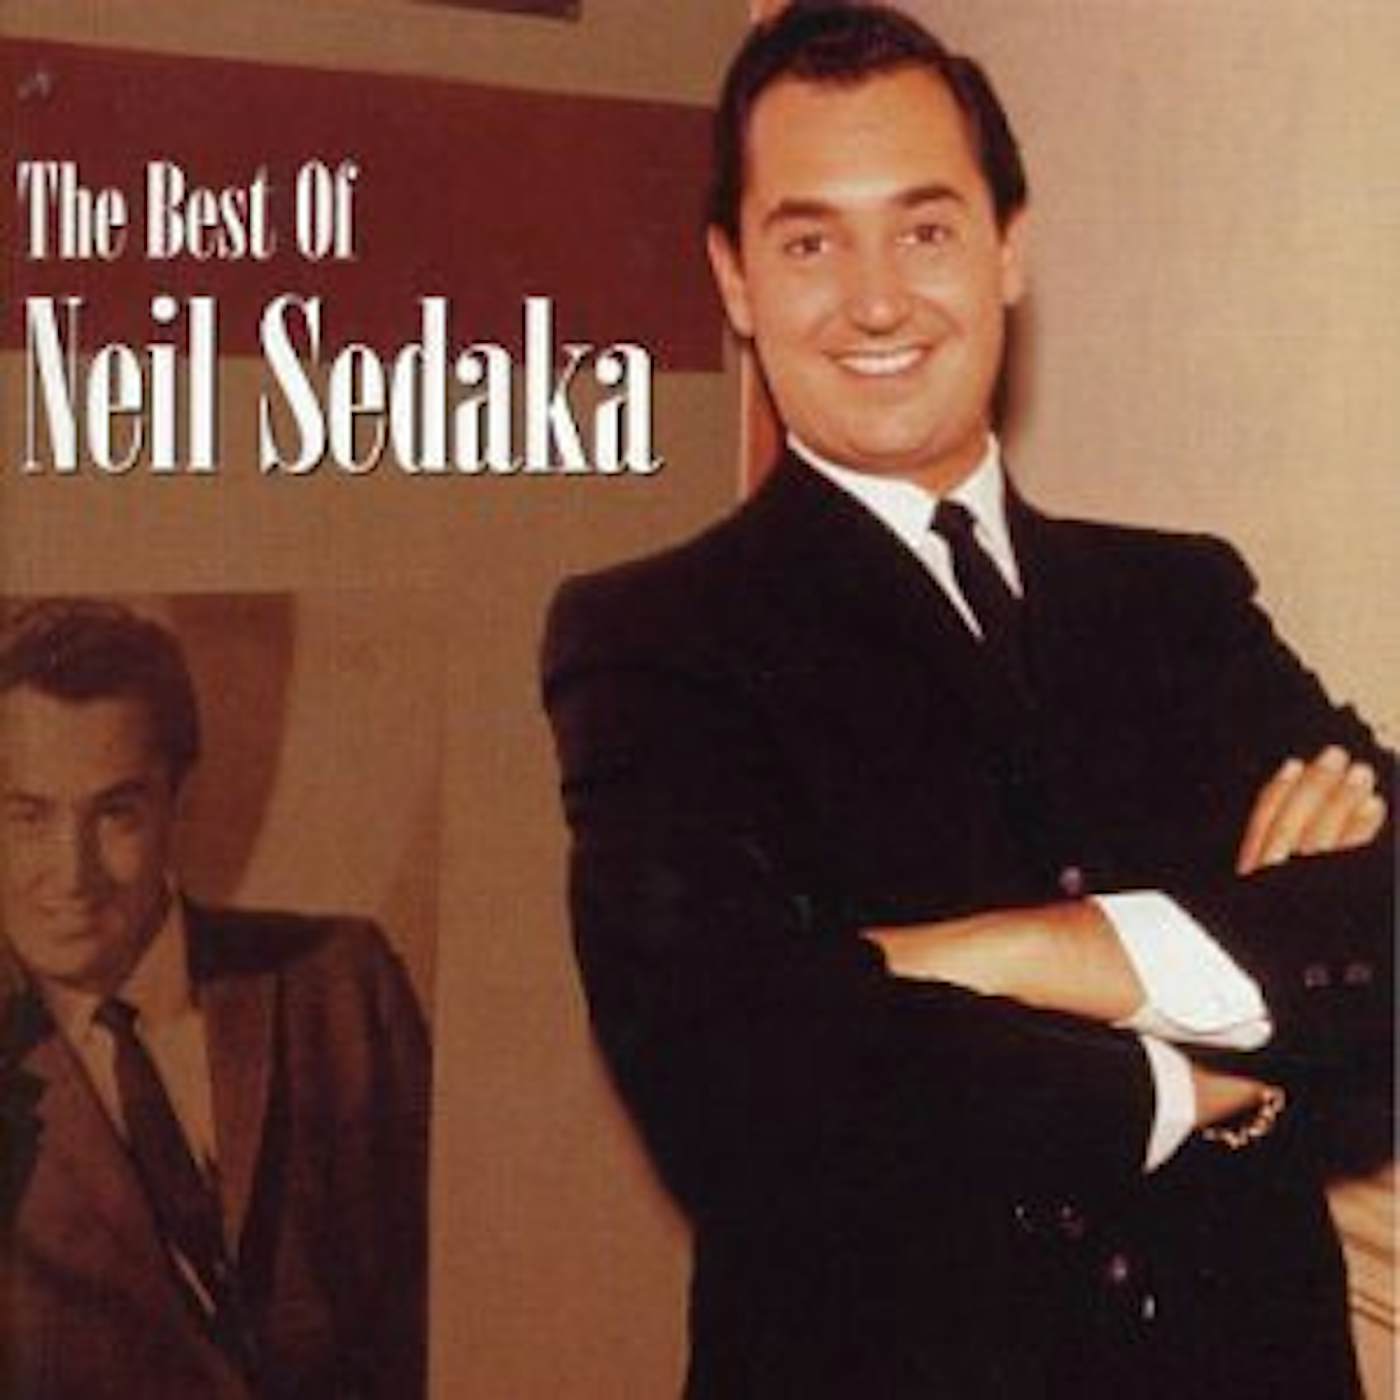 Neil Sedaka BEST OF CD